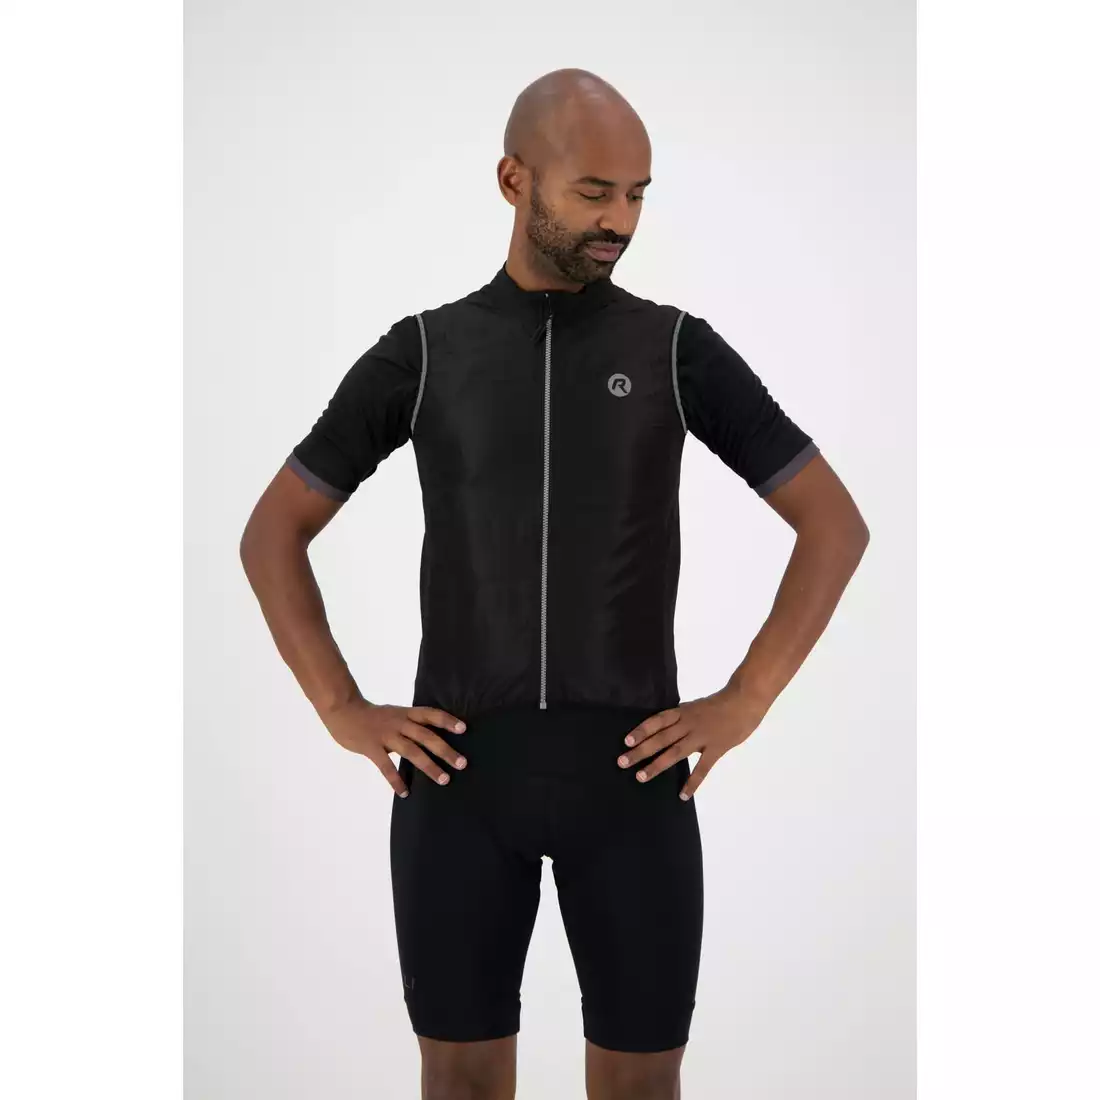 Rogelli CORE men's cycling vest, black